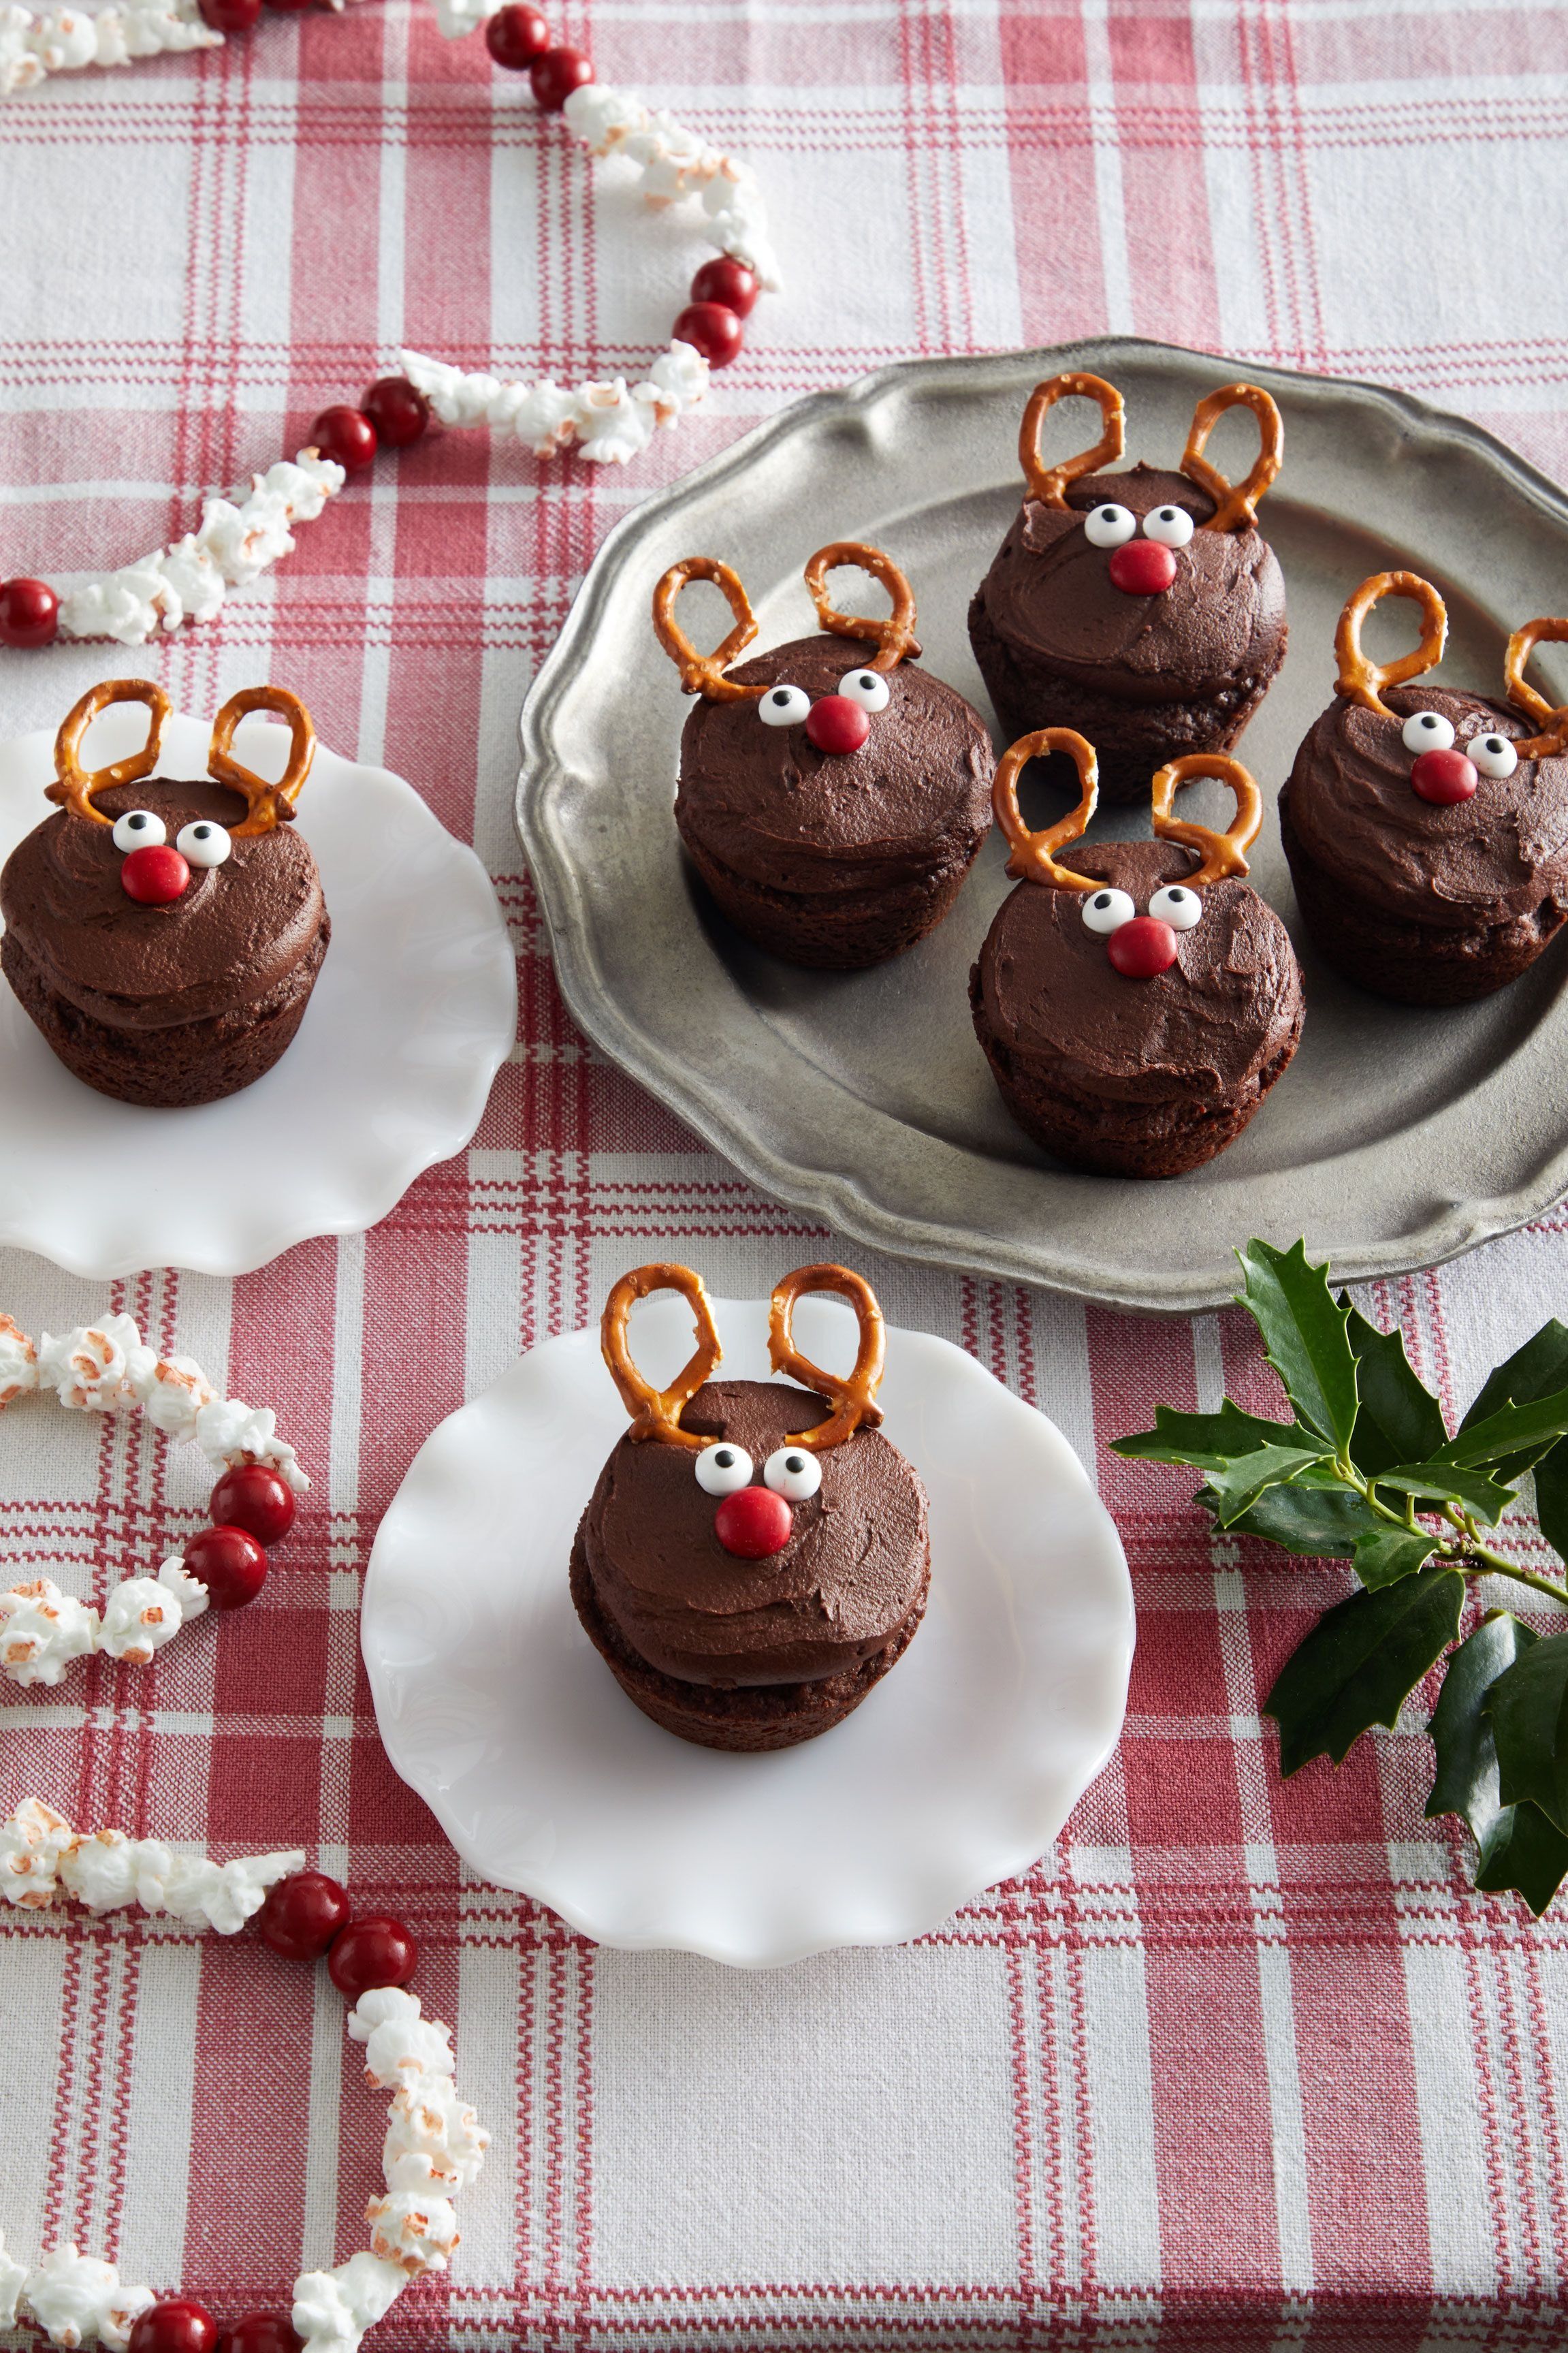 https://hips.hearstapps.com/hmg-prod/images/easy-christmas-desserts-reindeer-brownies-653c2bab587d1.jpeg